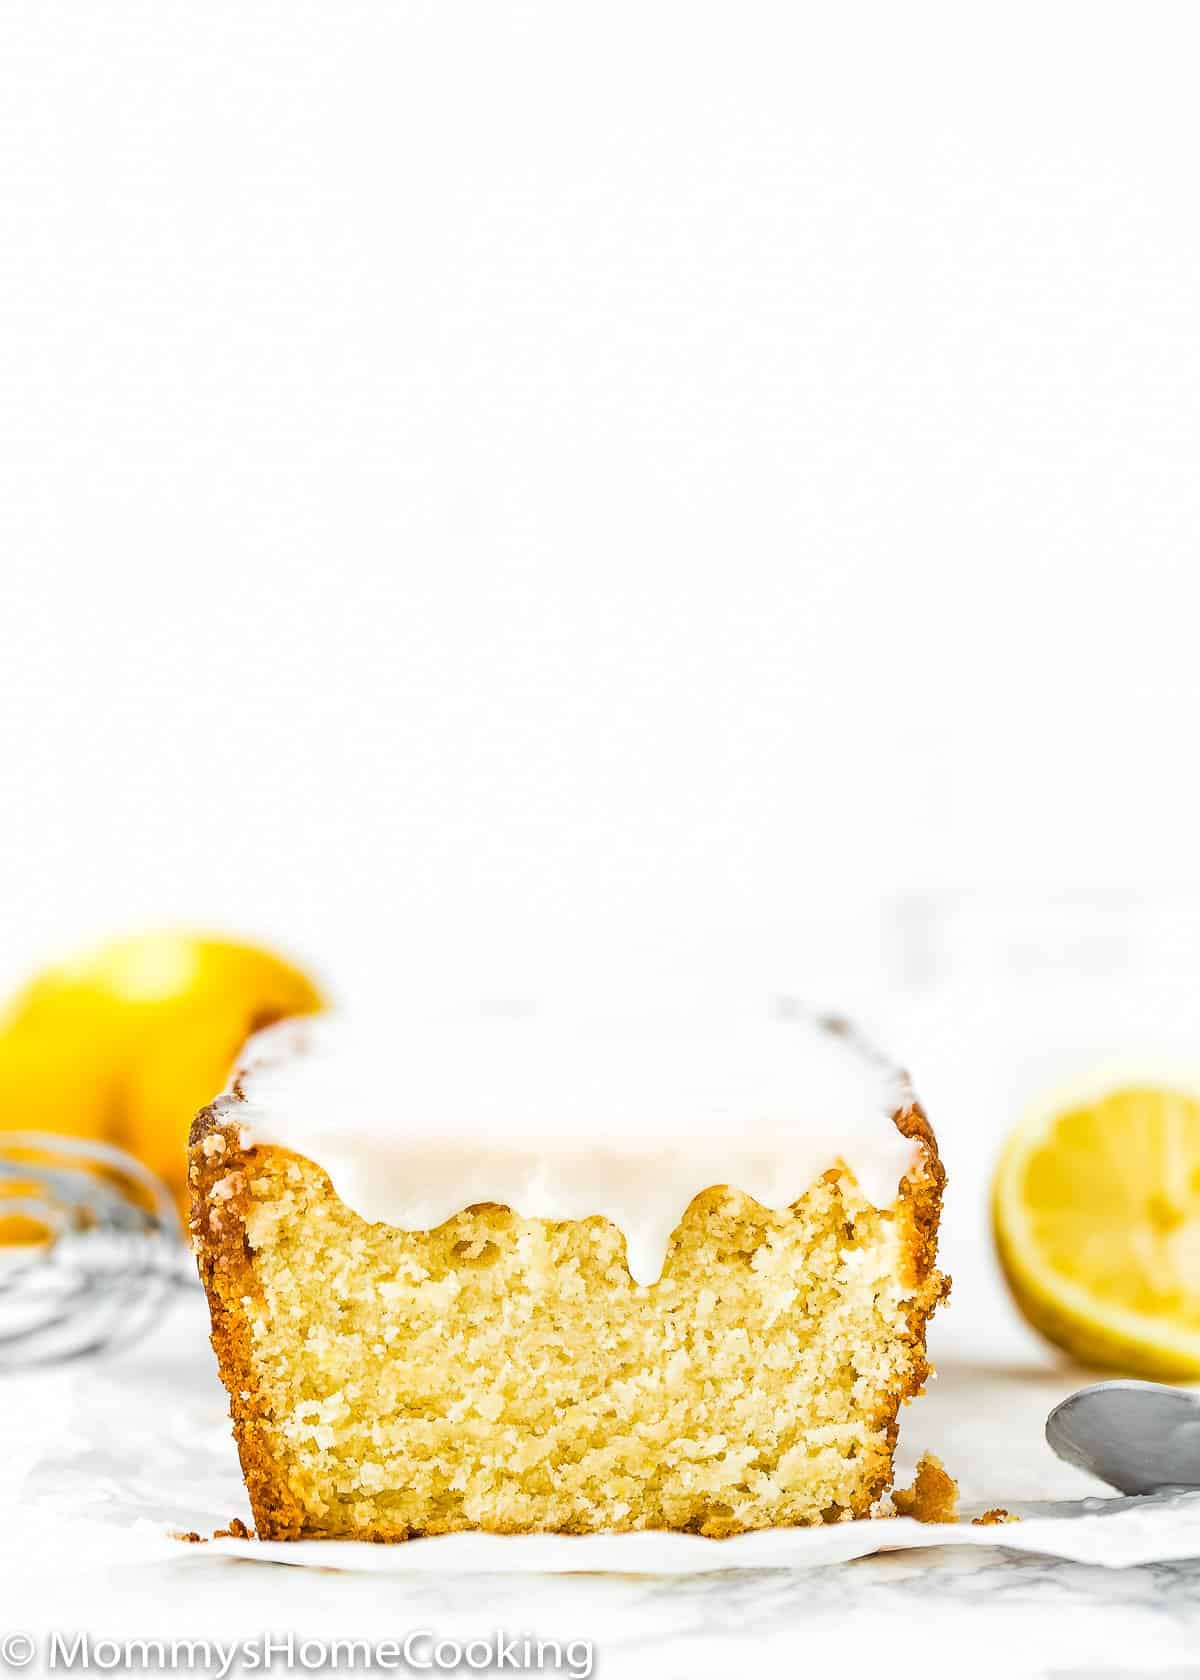 sliced Eggless Lemon Pound Cake with glaze and fresh lemons on the background